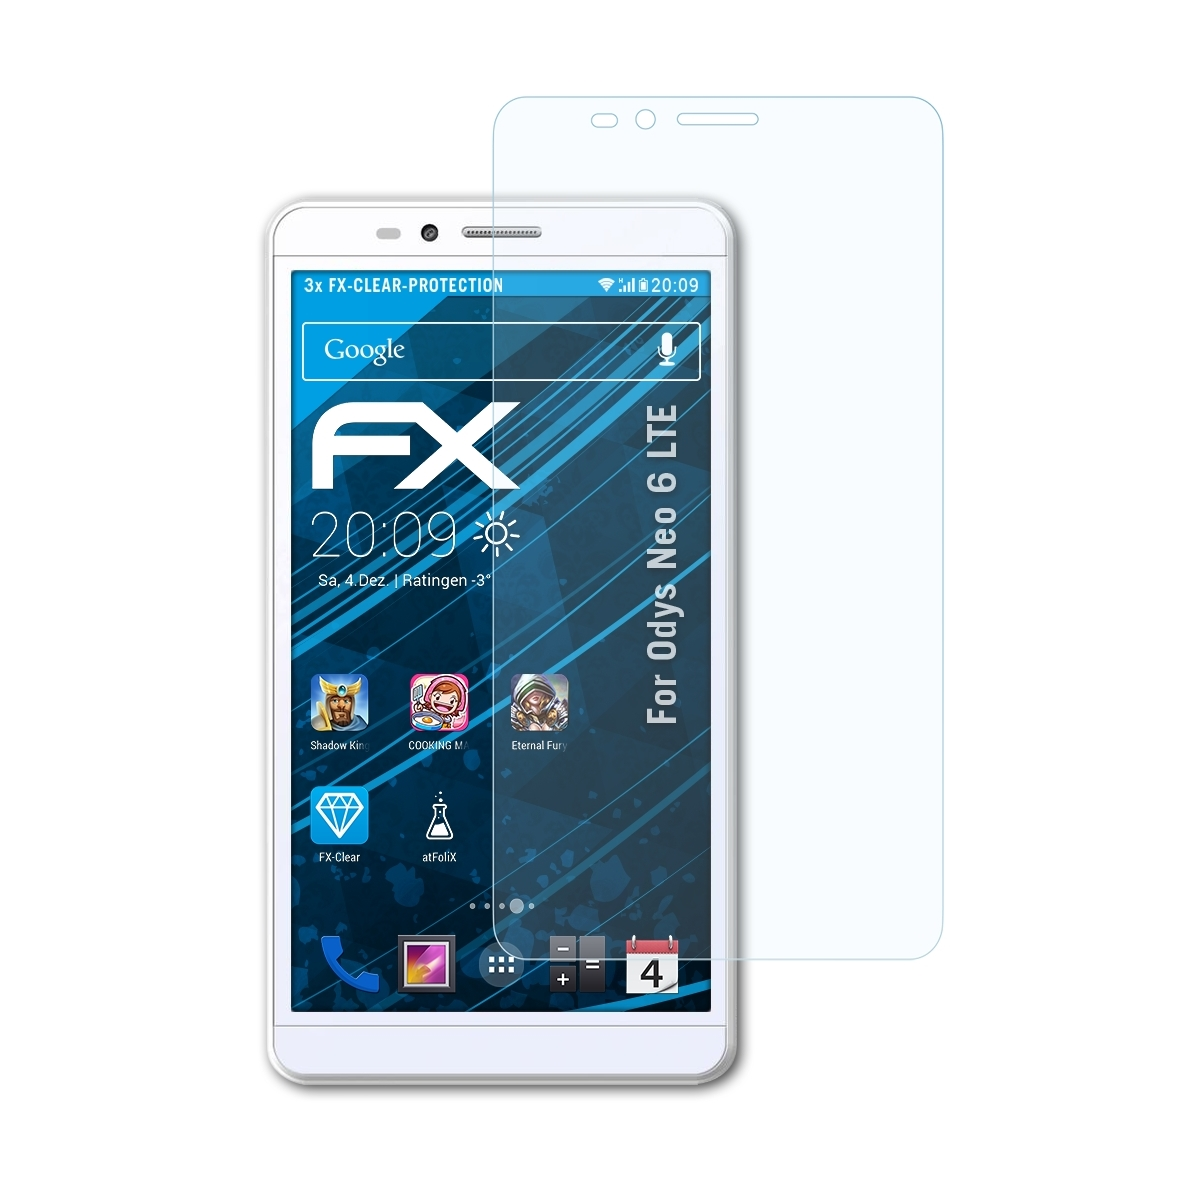 LTE) FX-Clear Displayschutz(für 6 Odys 3x ATFOLIX Neo